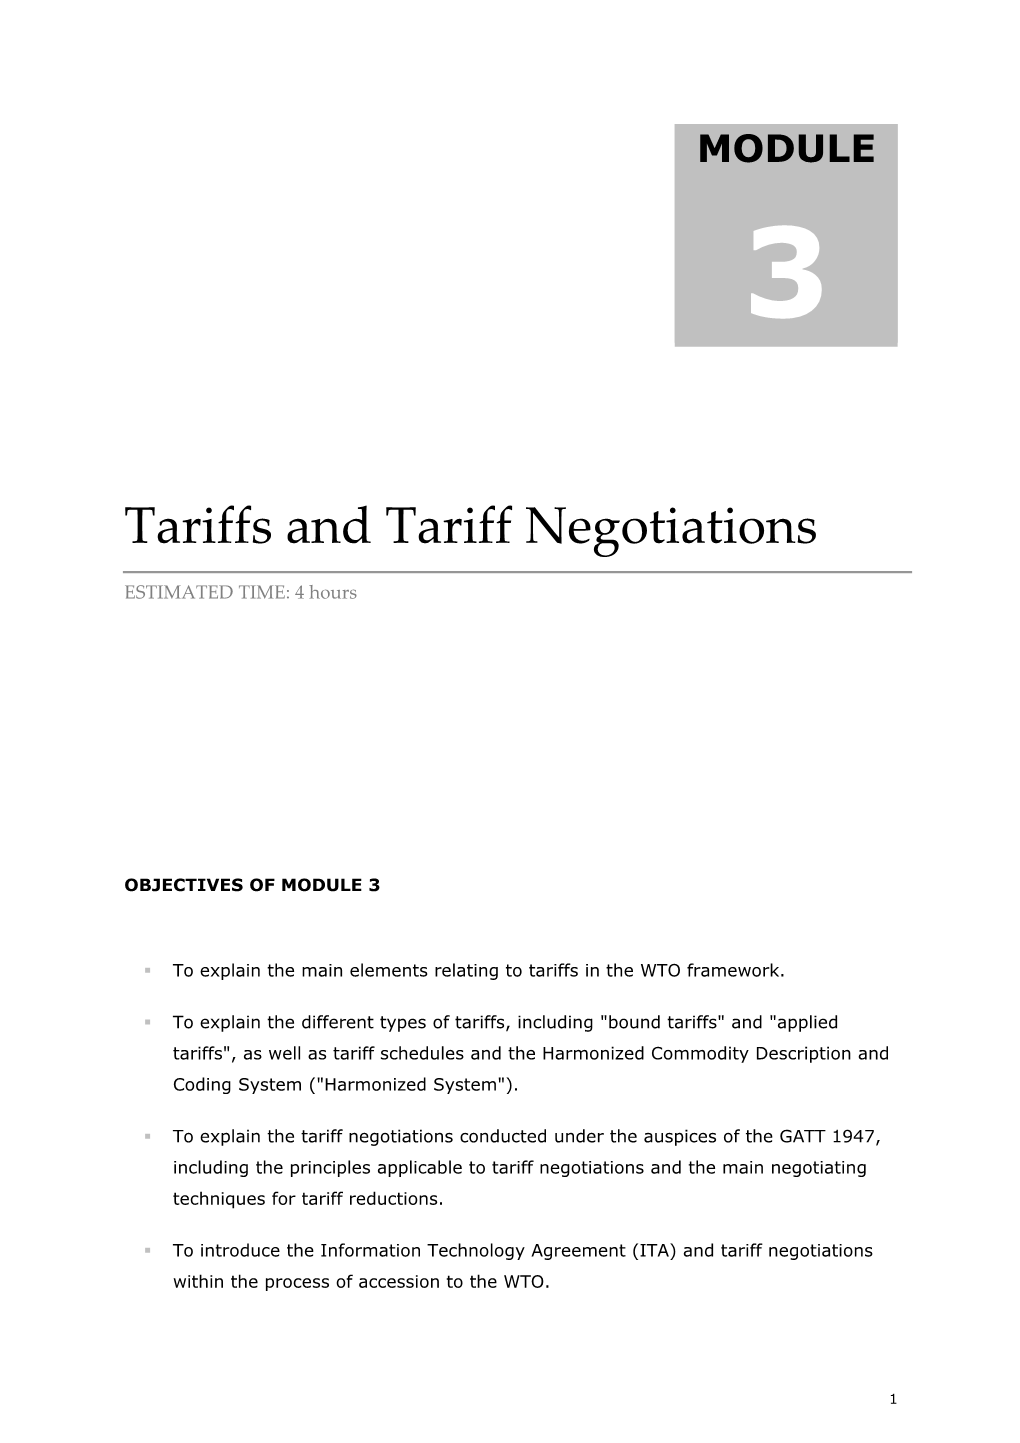 M3-Tariffs and Tariff Negotiations